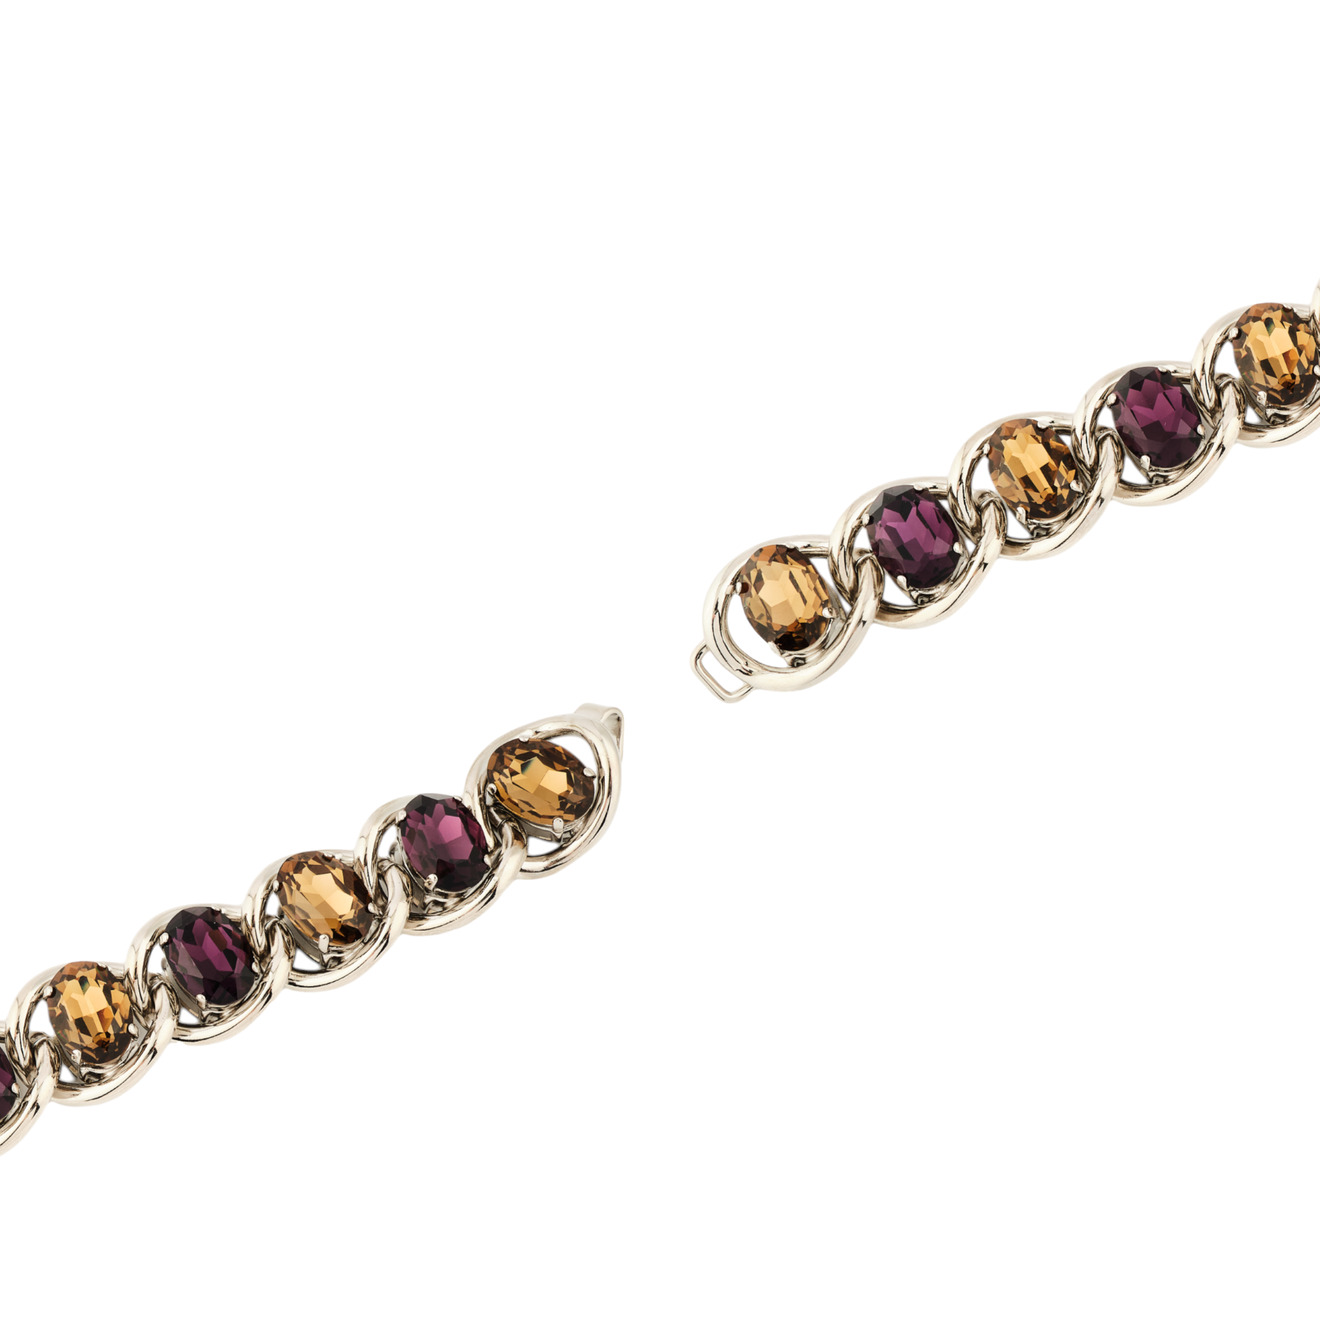 Marni Браслет-цепь с желто-фиолетовыми кристаллами marni золотистый браслет с черным обсидианом